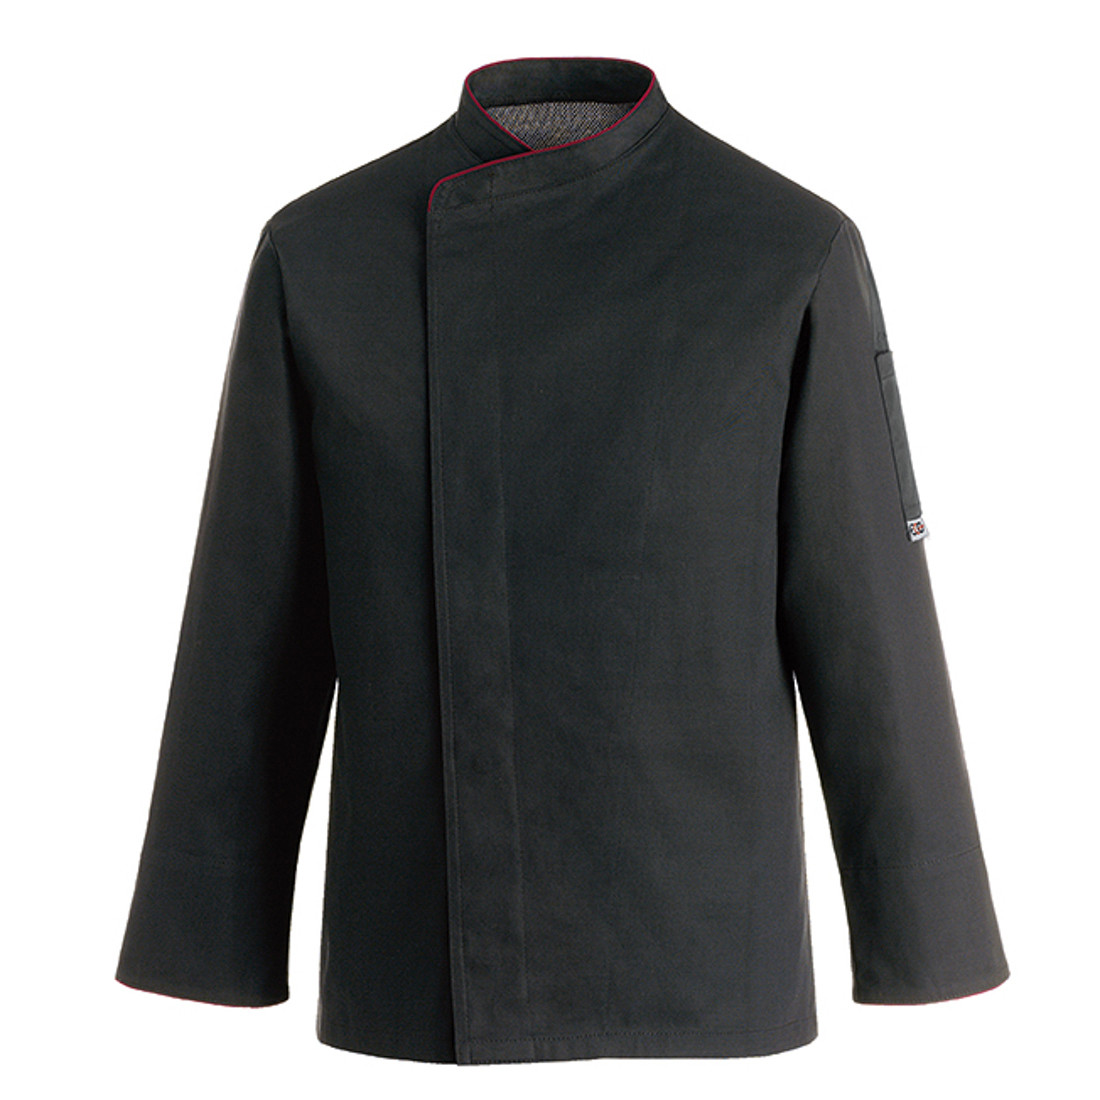 Veste chef Comfort, 65% polyester/35% coton - Les vêtements de protection